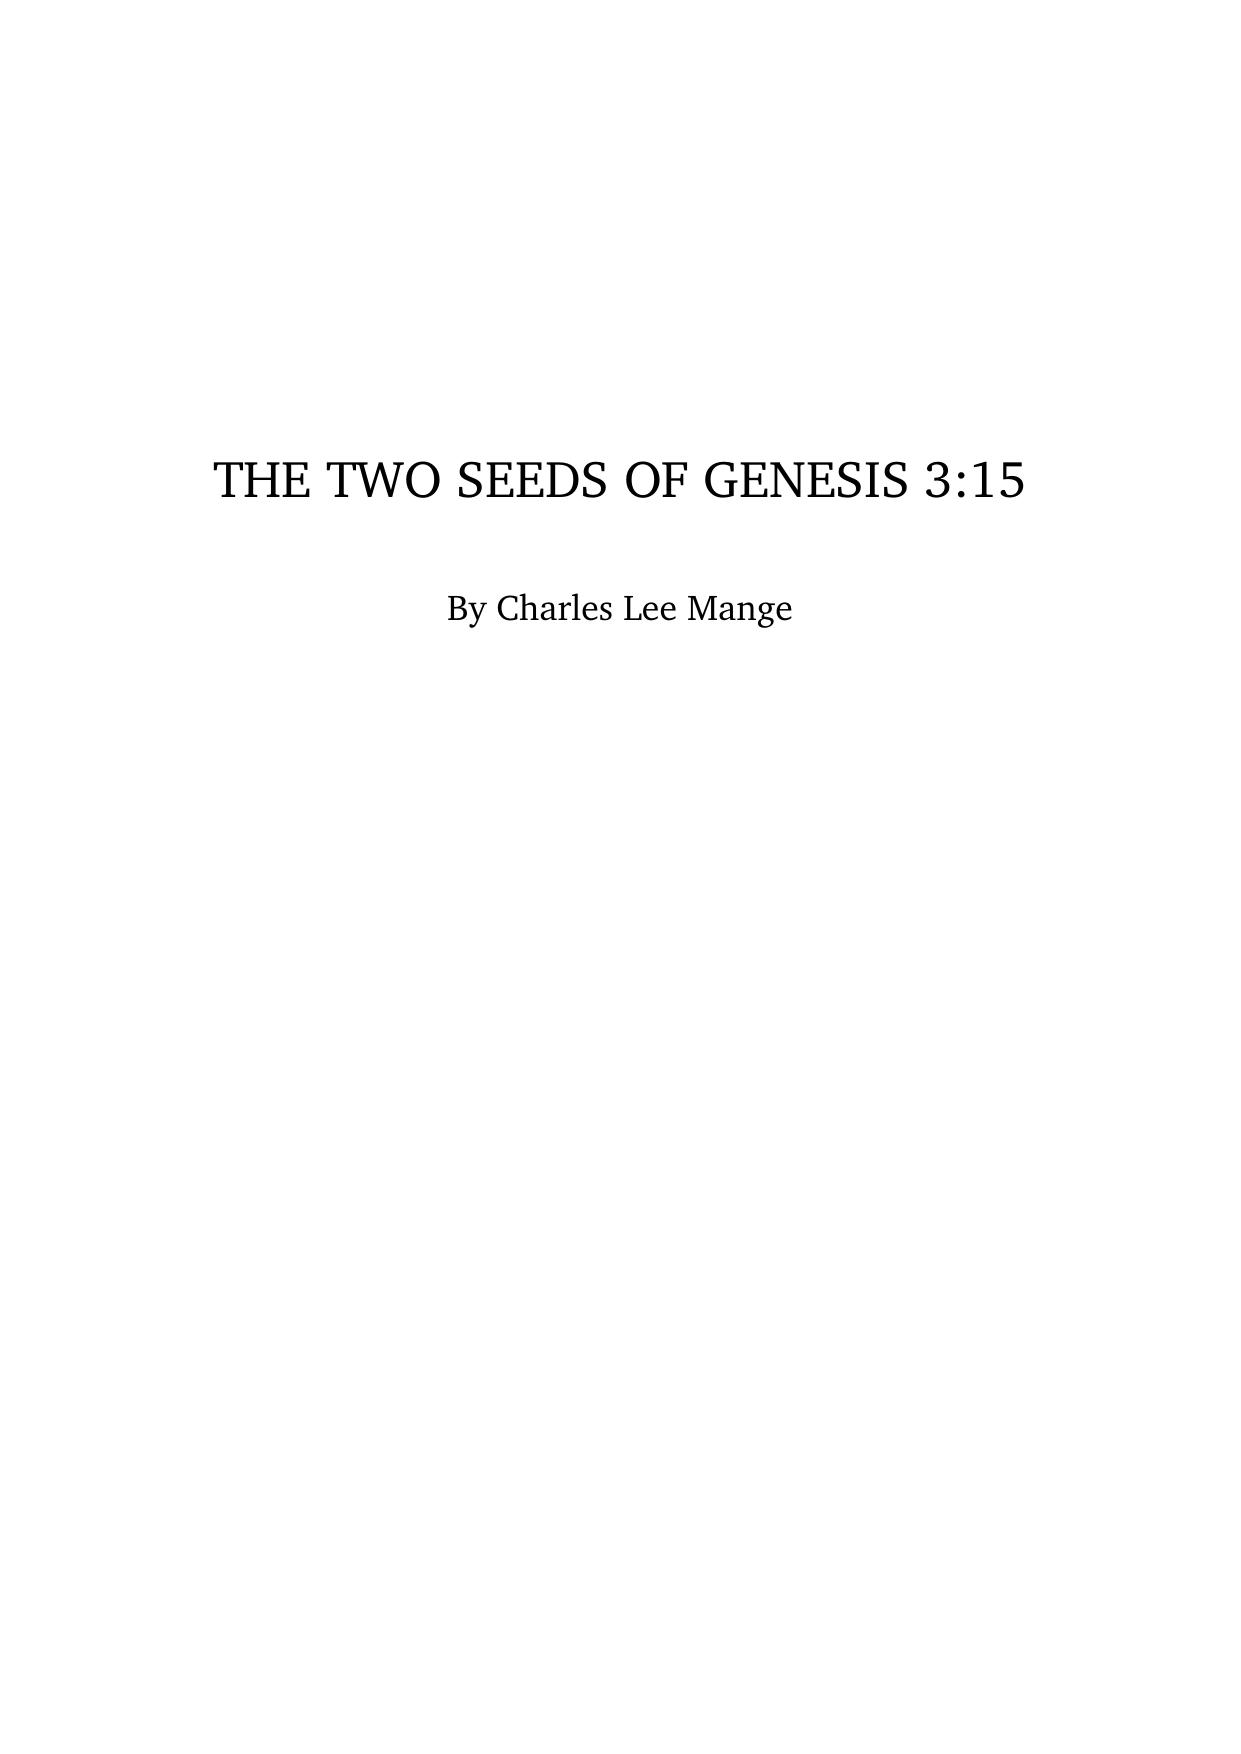 The two seeds of Genesis 3:15 by Bahrmanou